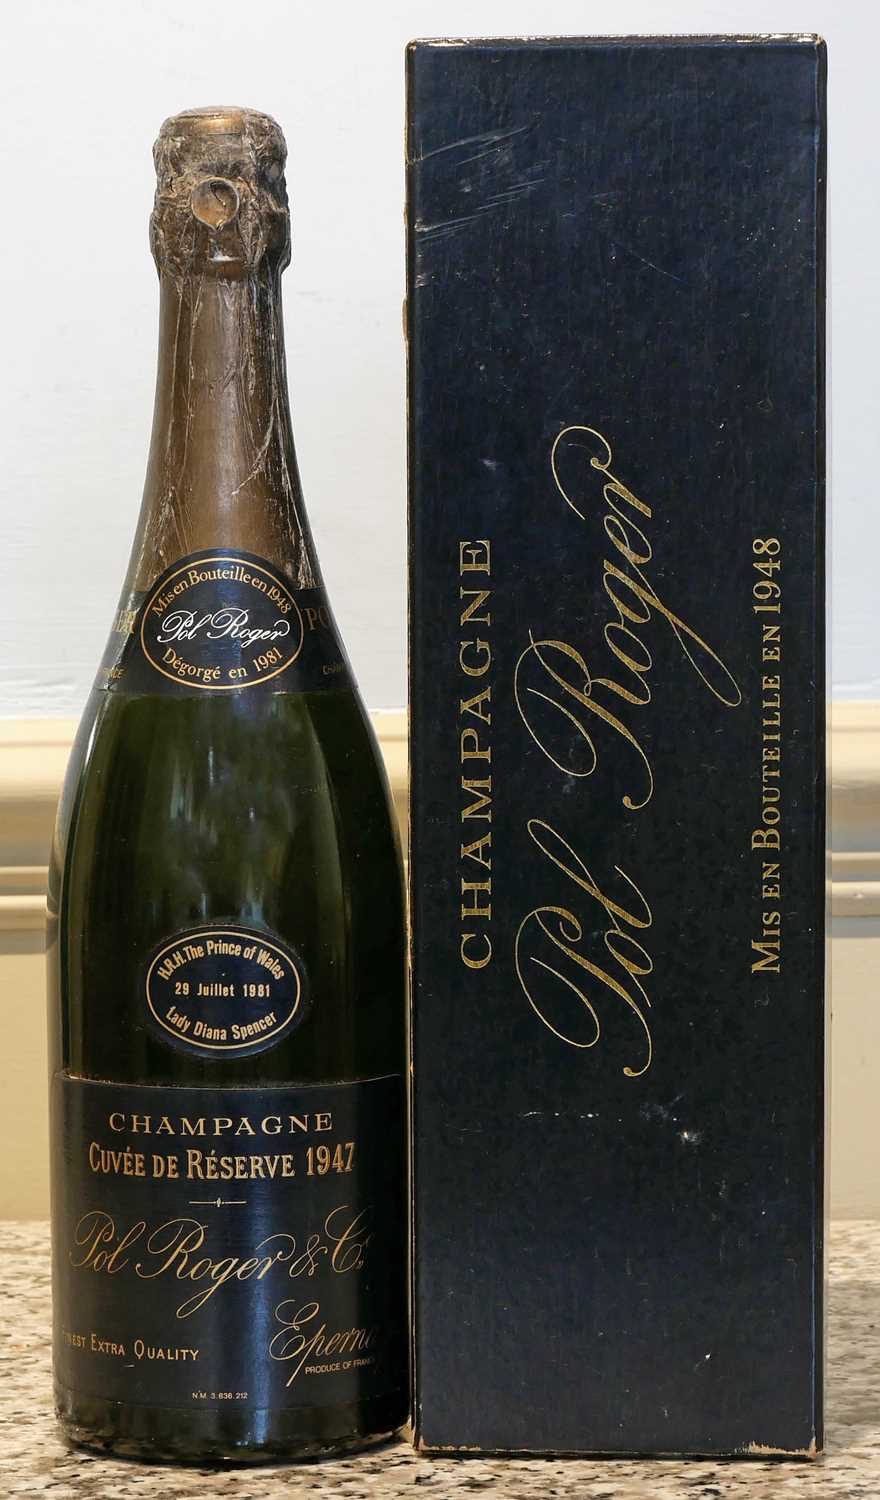 Lot 31 - 1 bottle Champagne Pol Roger Vintage